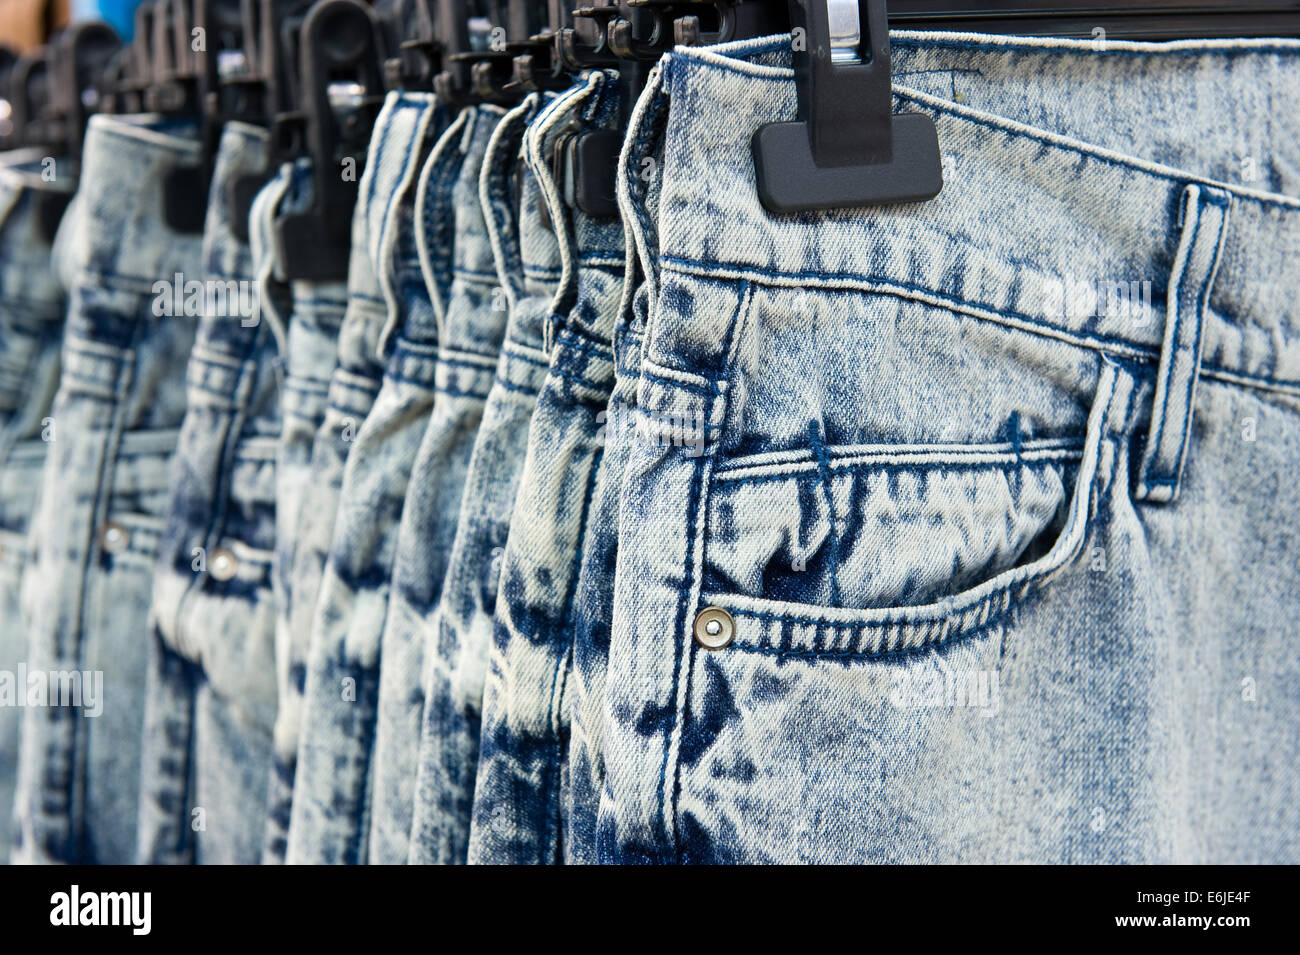 Nuevos blue jeans colgados en una tienda Foto de stock